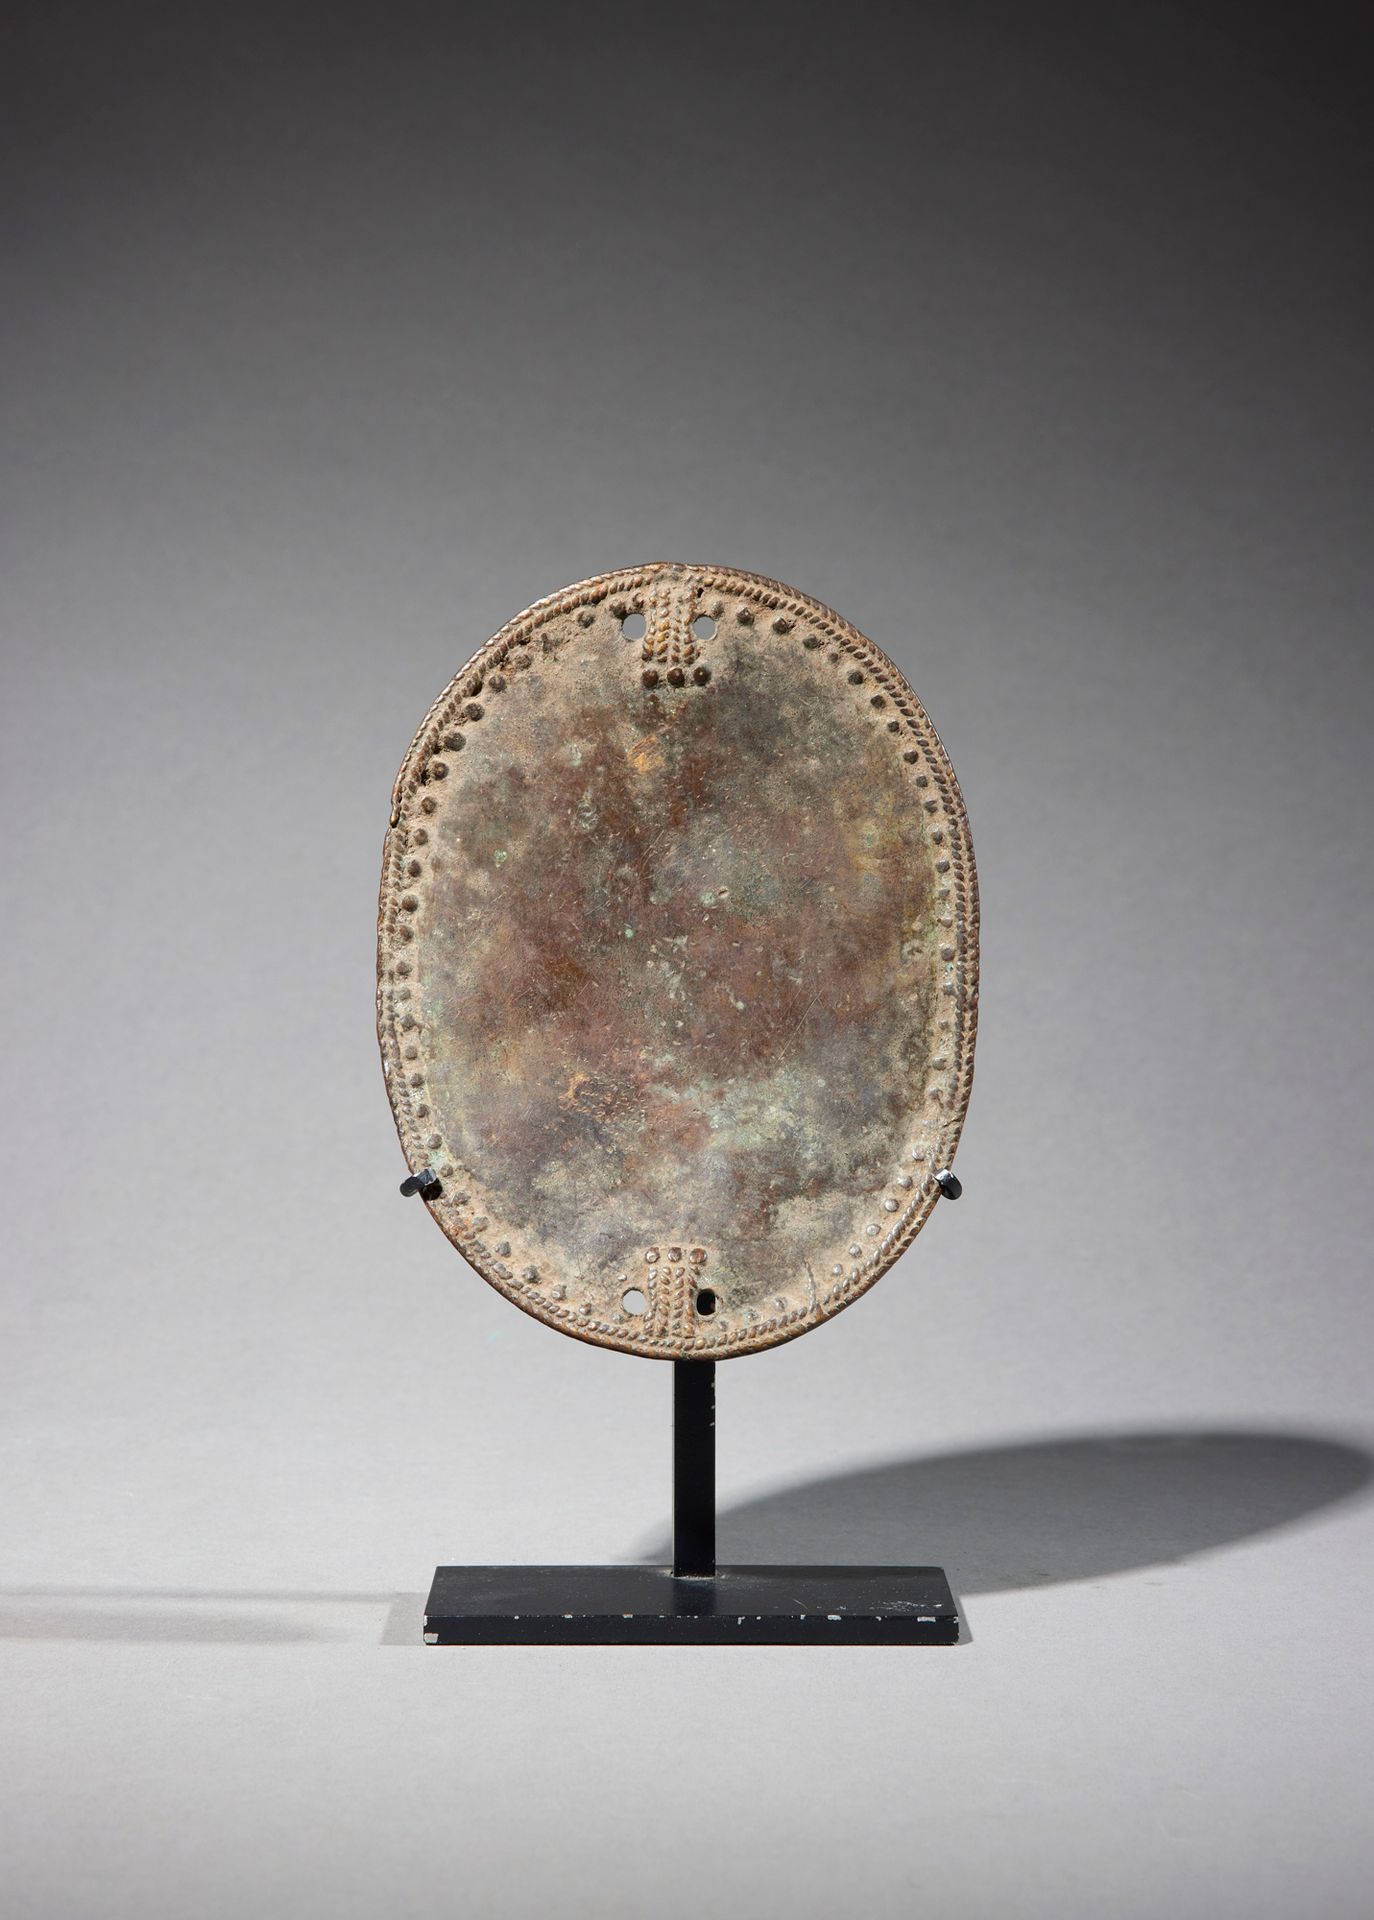 Null 装饰板

西非

铜质

H.15.1厘米



椭圆形的装饰盘，装饰有双辫子门楣和一连串的浮雕点。四个固定点被刺穿。